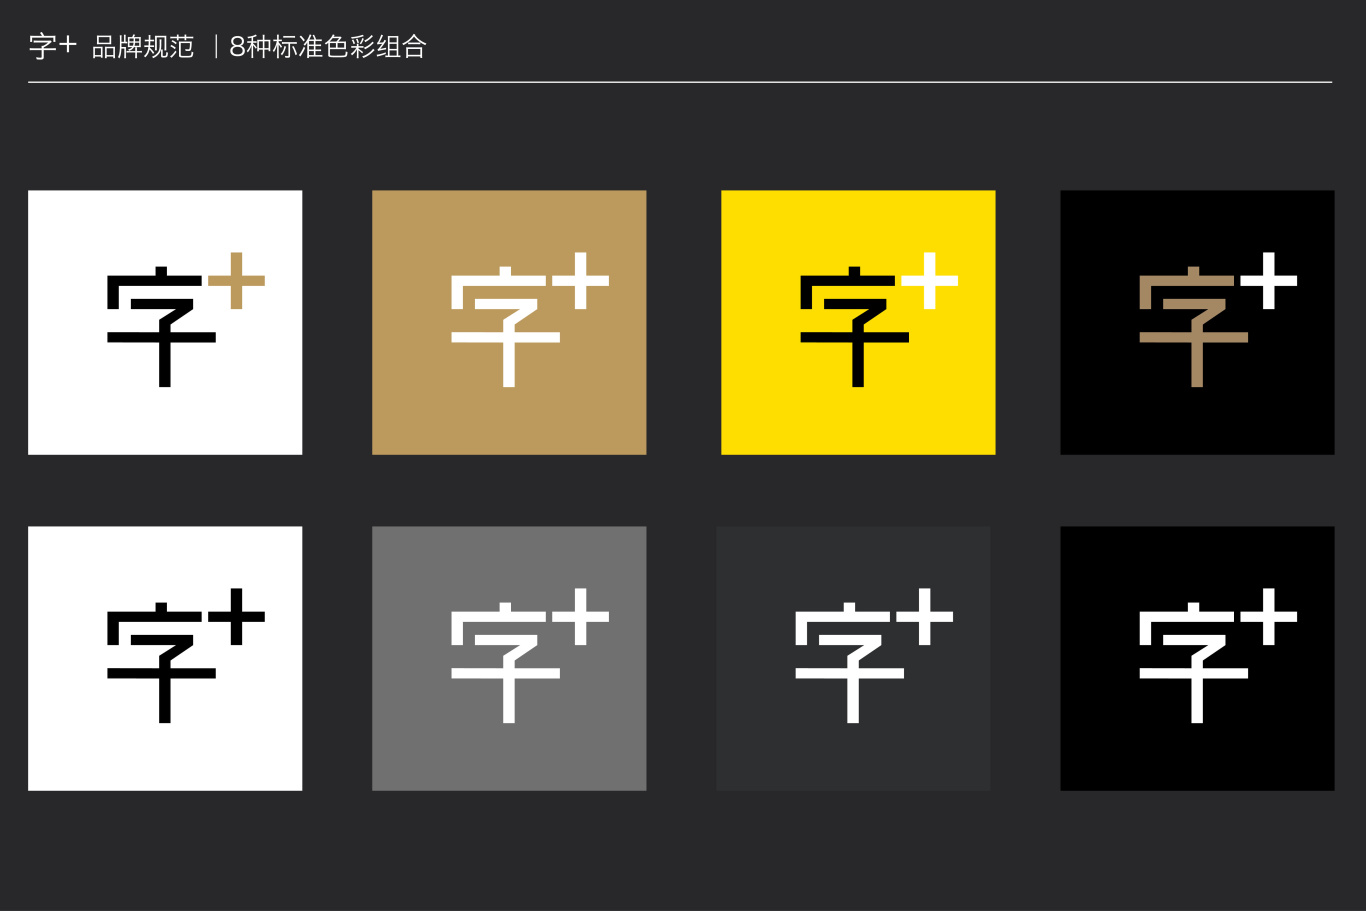 方正集团旗下字体工具“字+”品牌logo图5